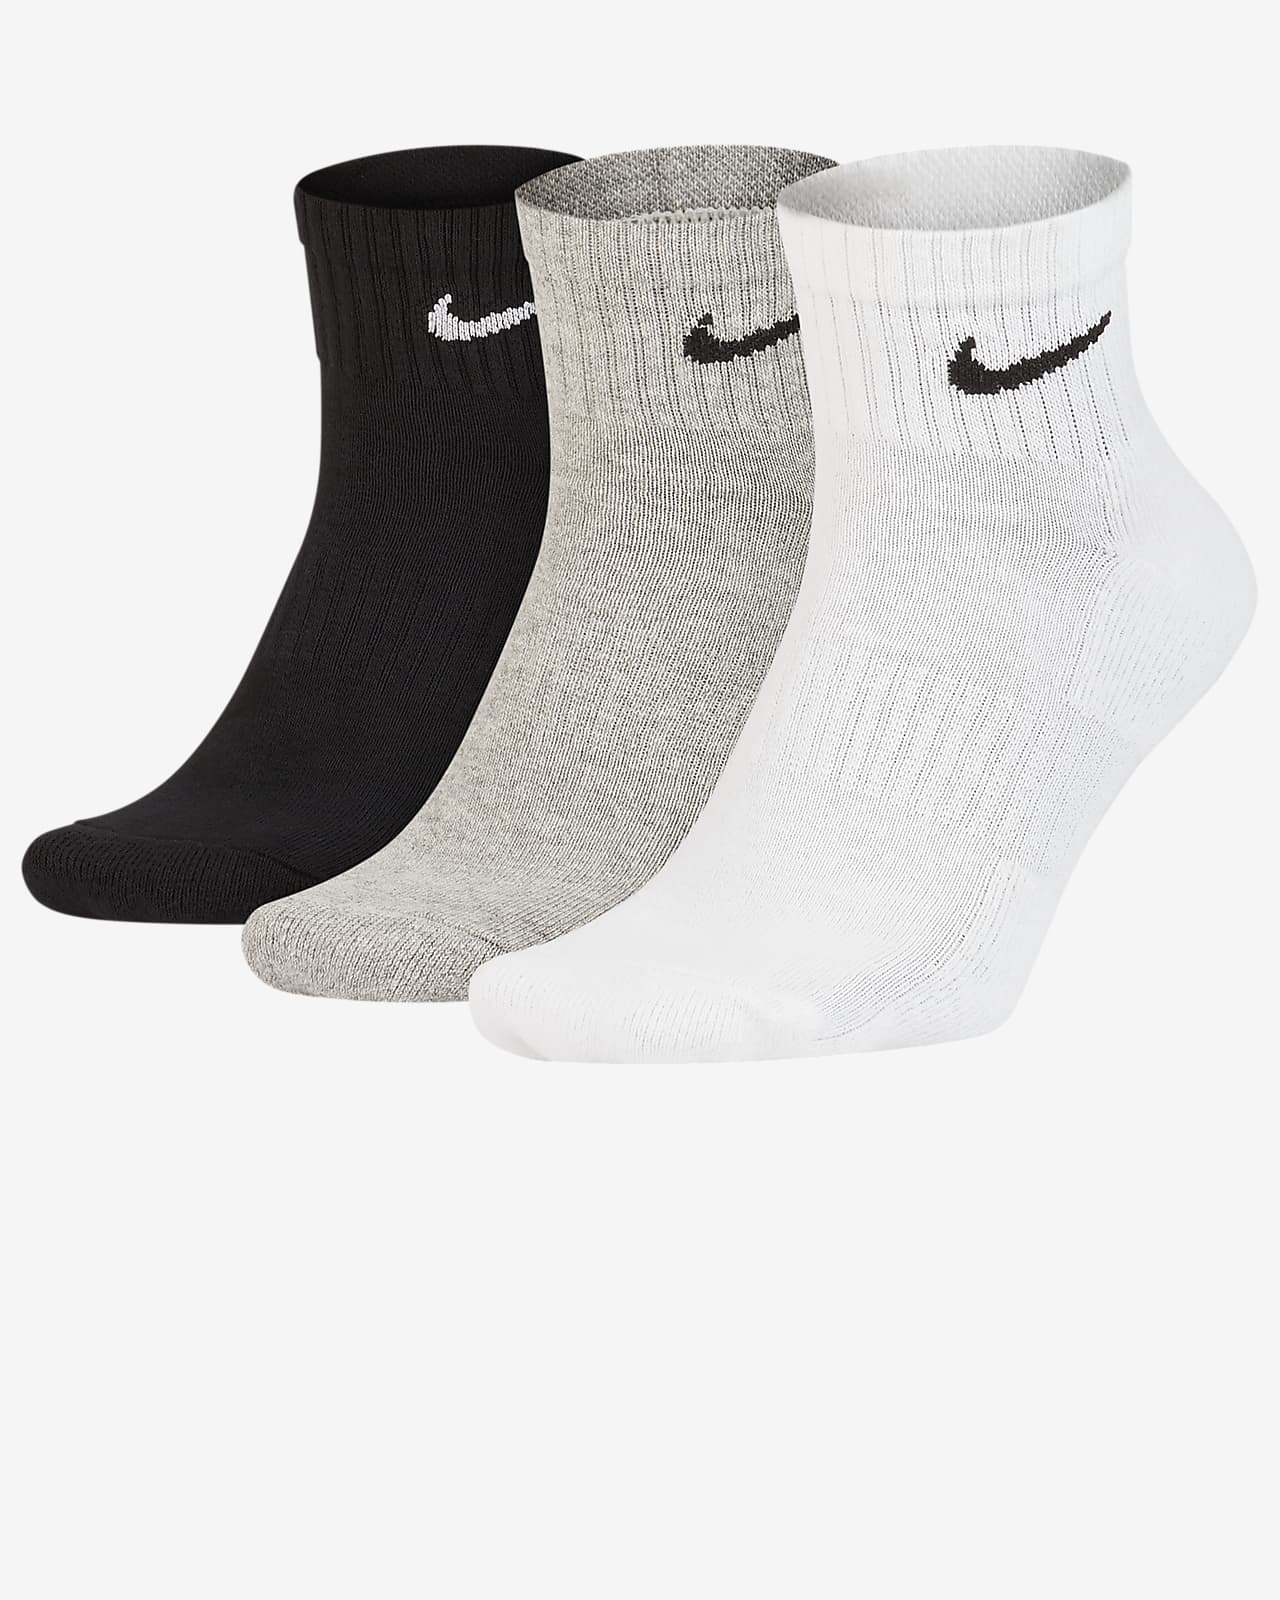 Calze da training alla caviglia Nike Everyday Cushioned (3 paia). Nike IT